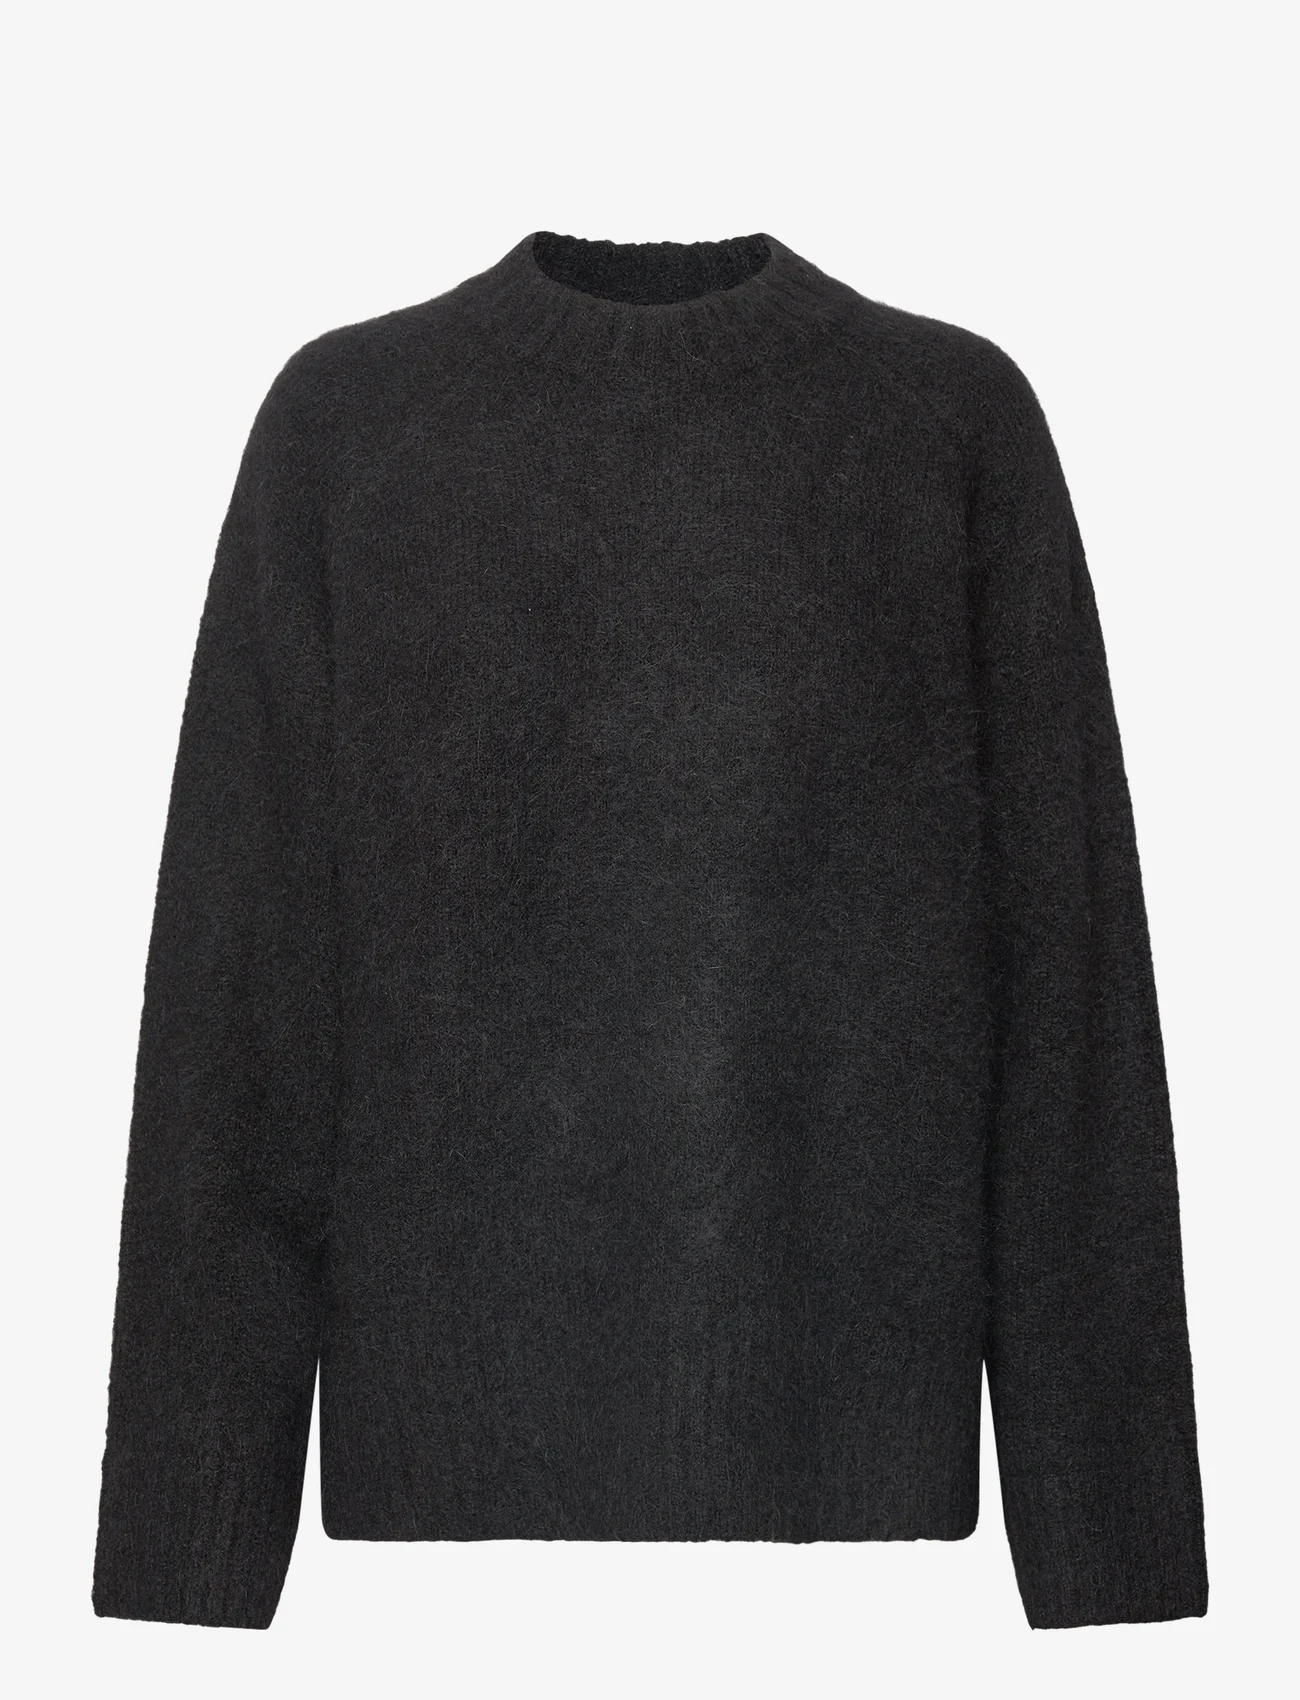 HOLZWEILER - Fure Fluffy Knit Sweater - trøjer - black - 0